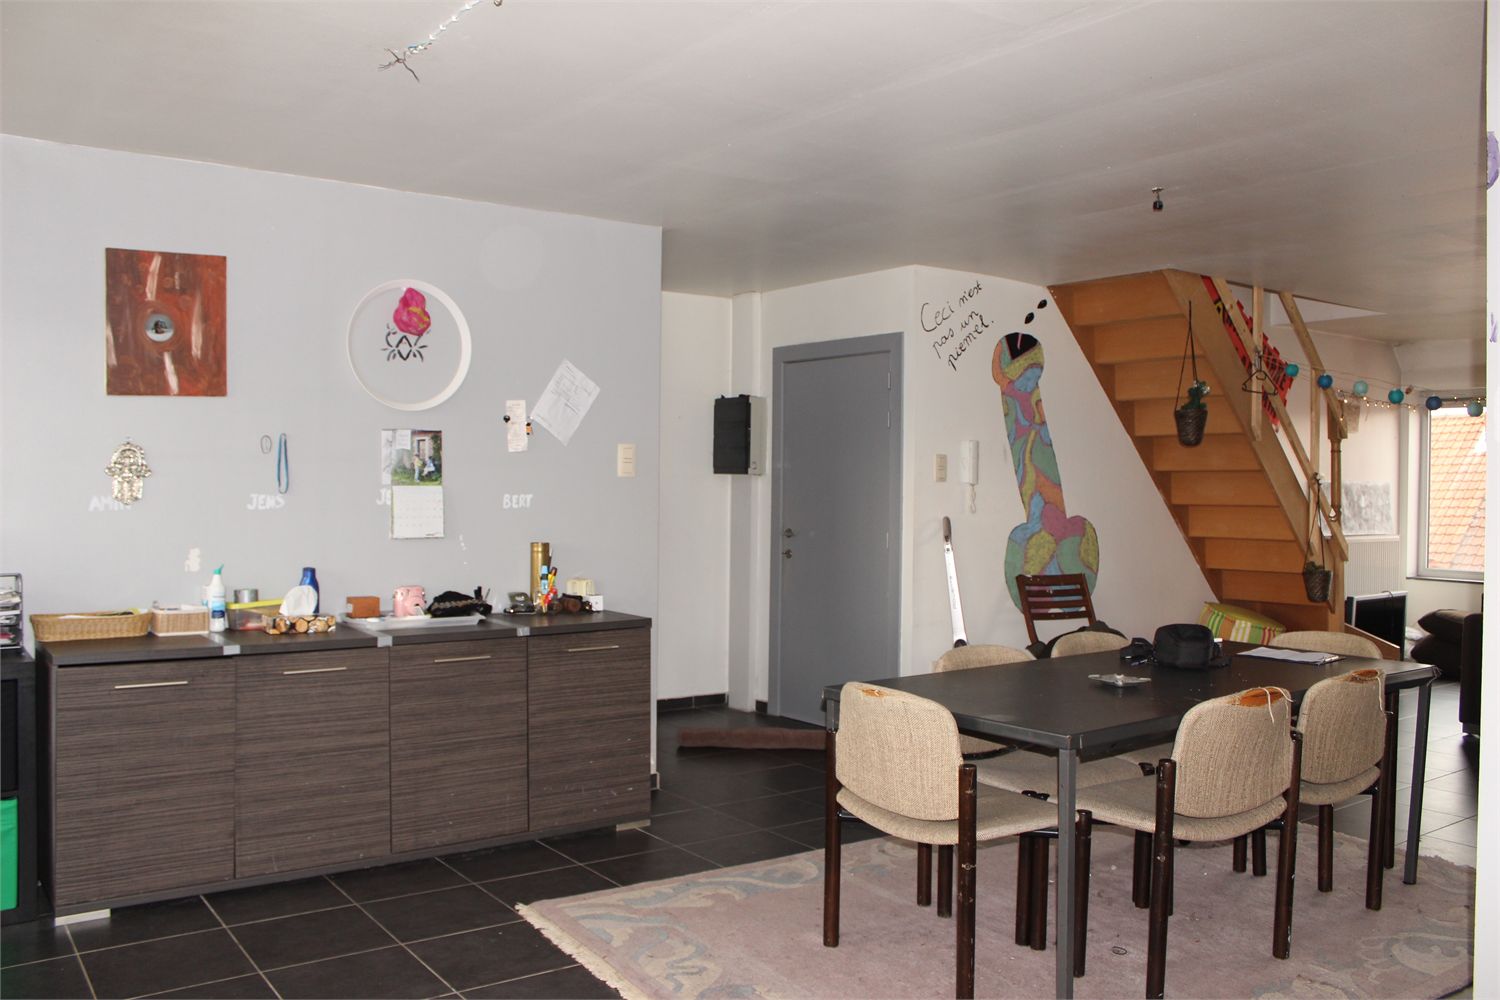 Duplex verkocht in Ledeberg